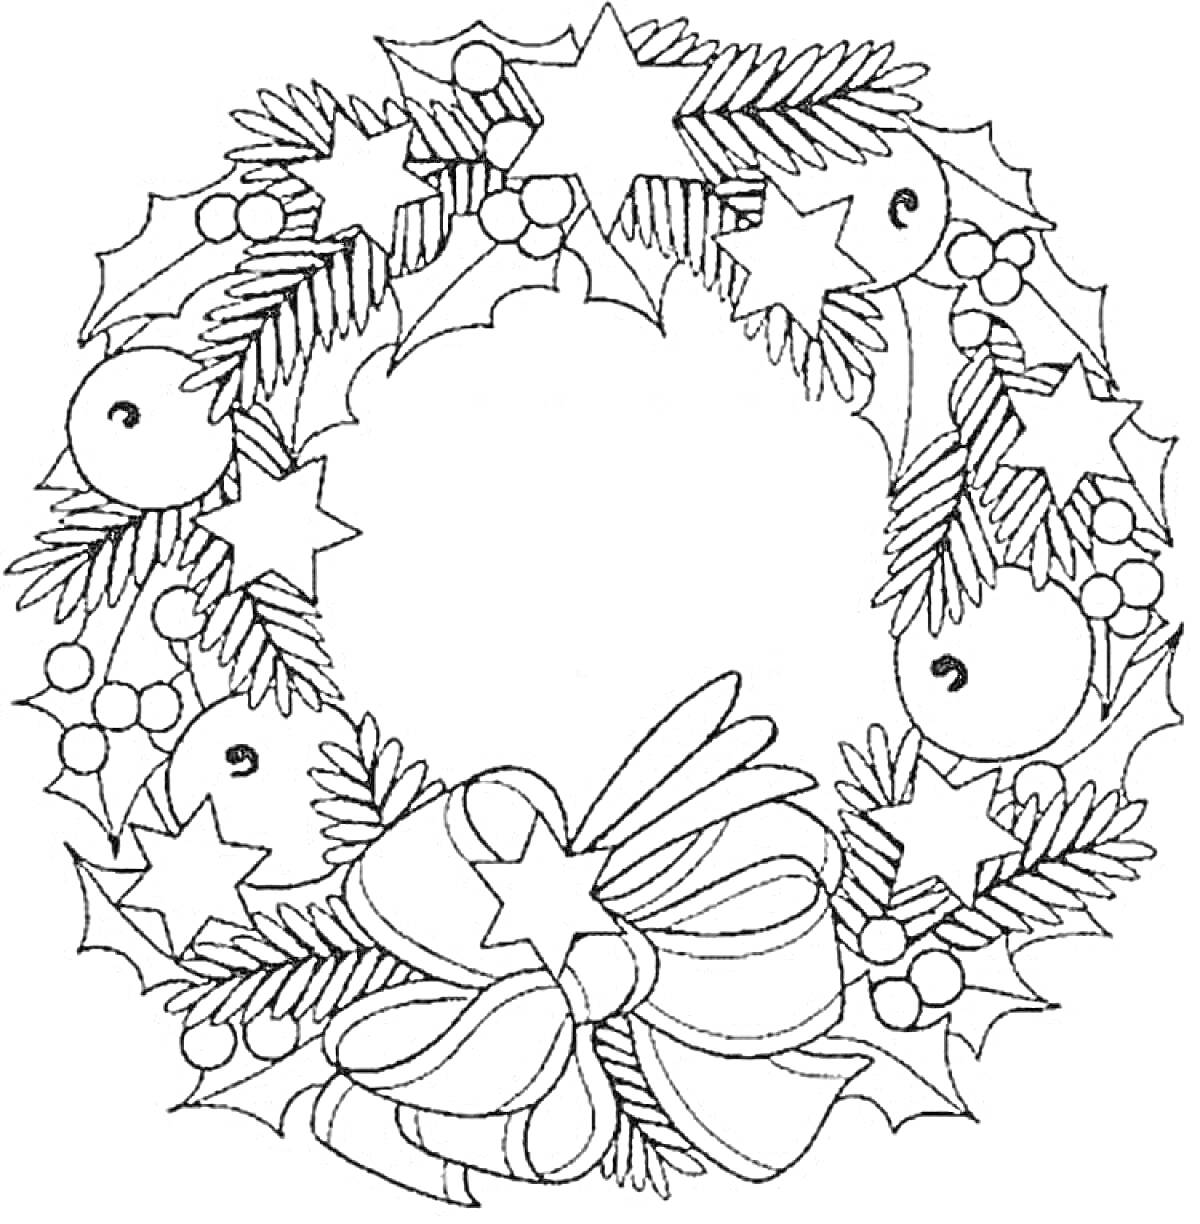 Раскраска Рождественский венок с шишками, звездочками, лентами, колокольчиками и ягодами